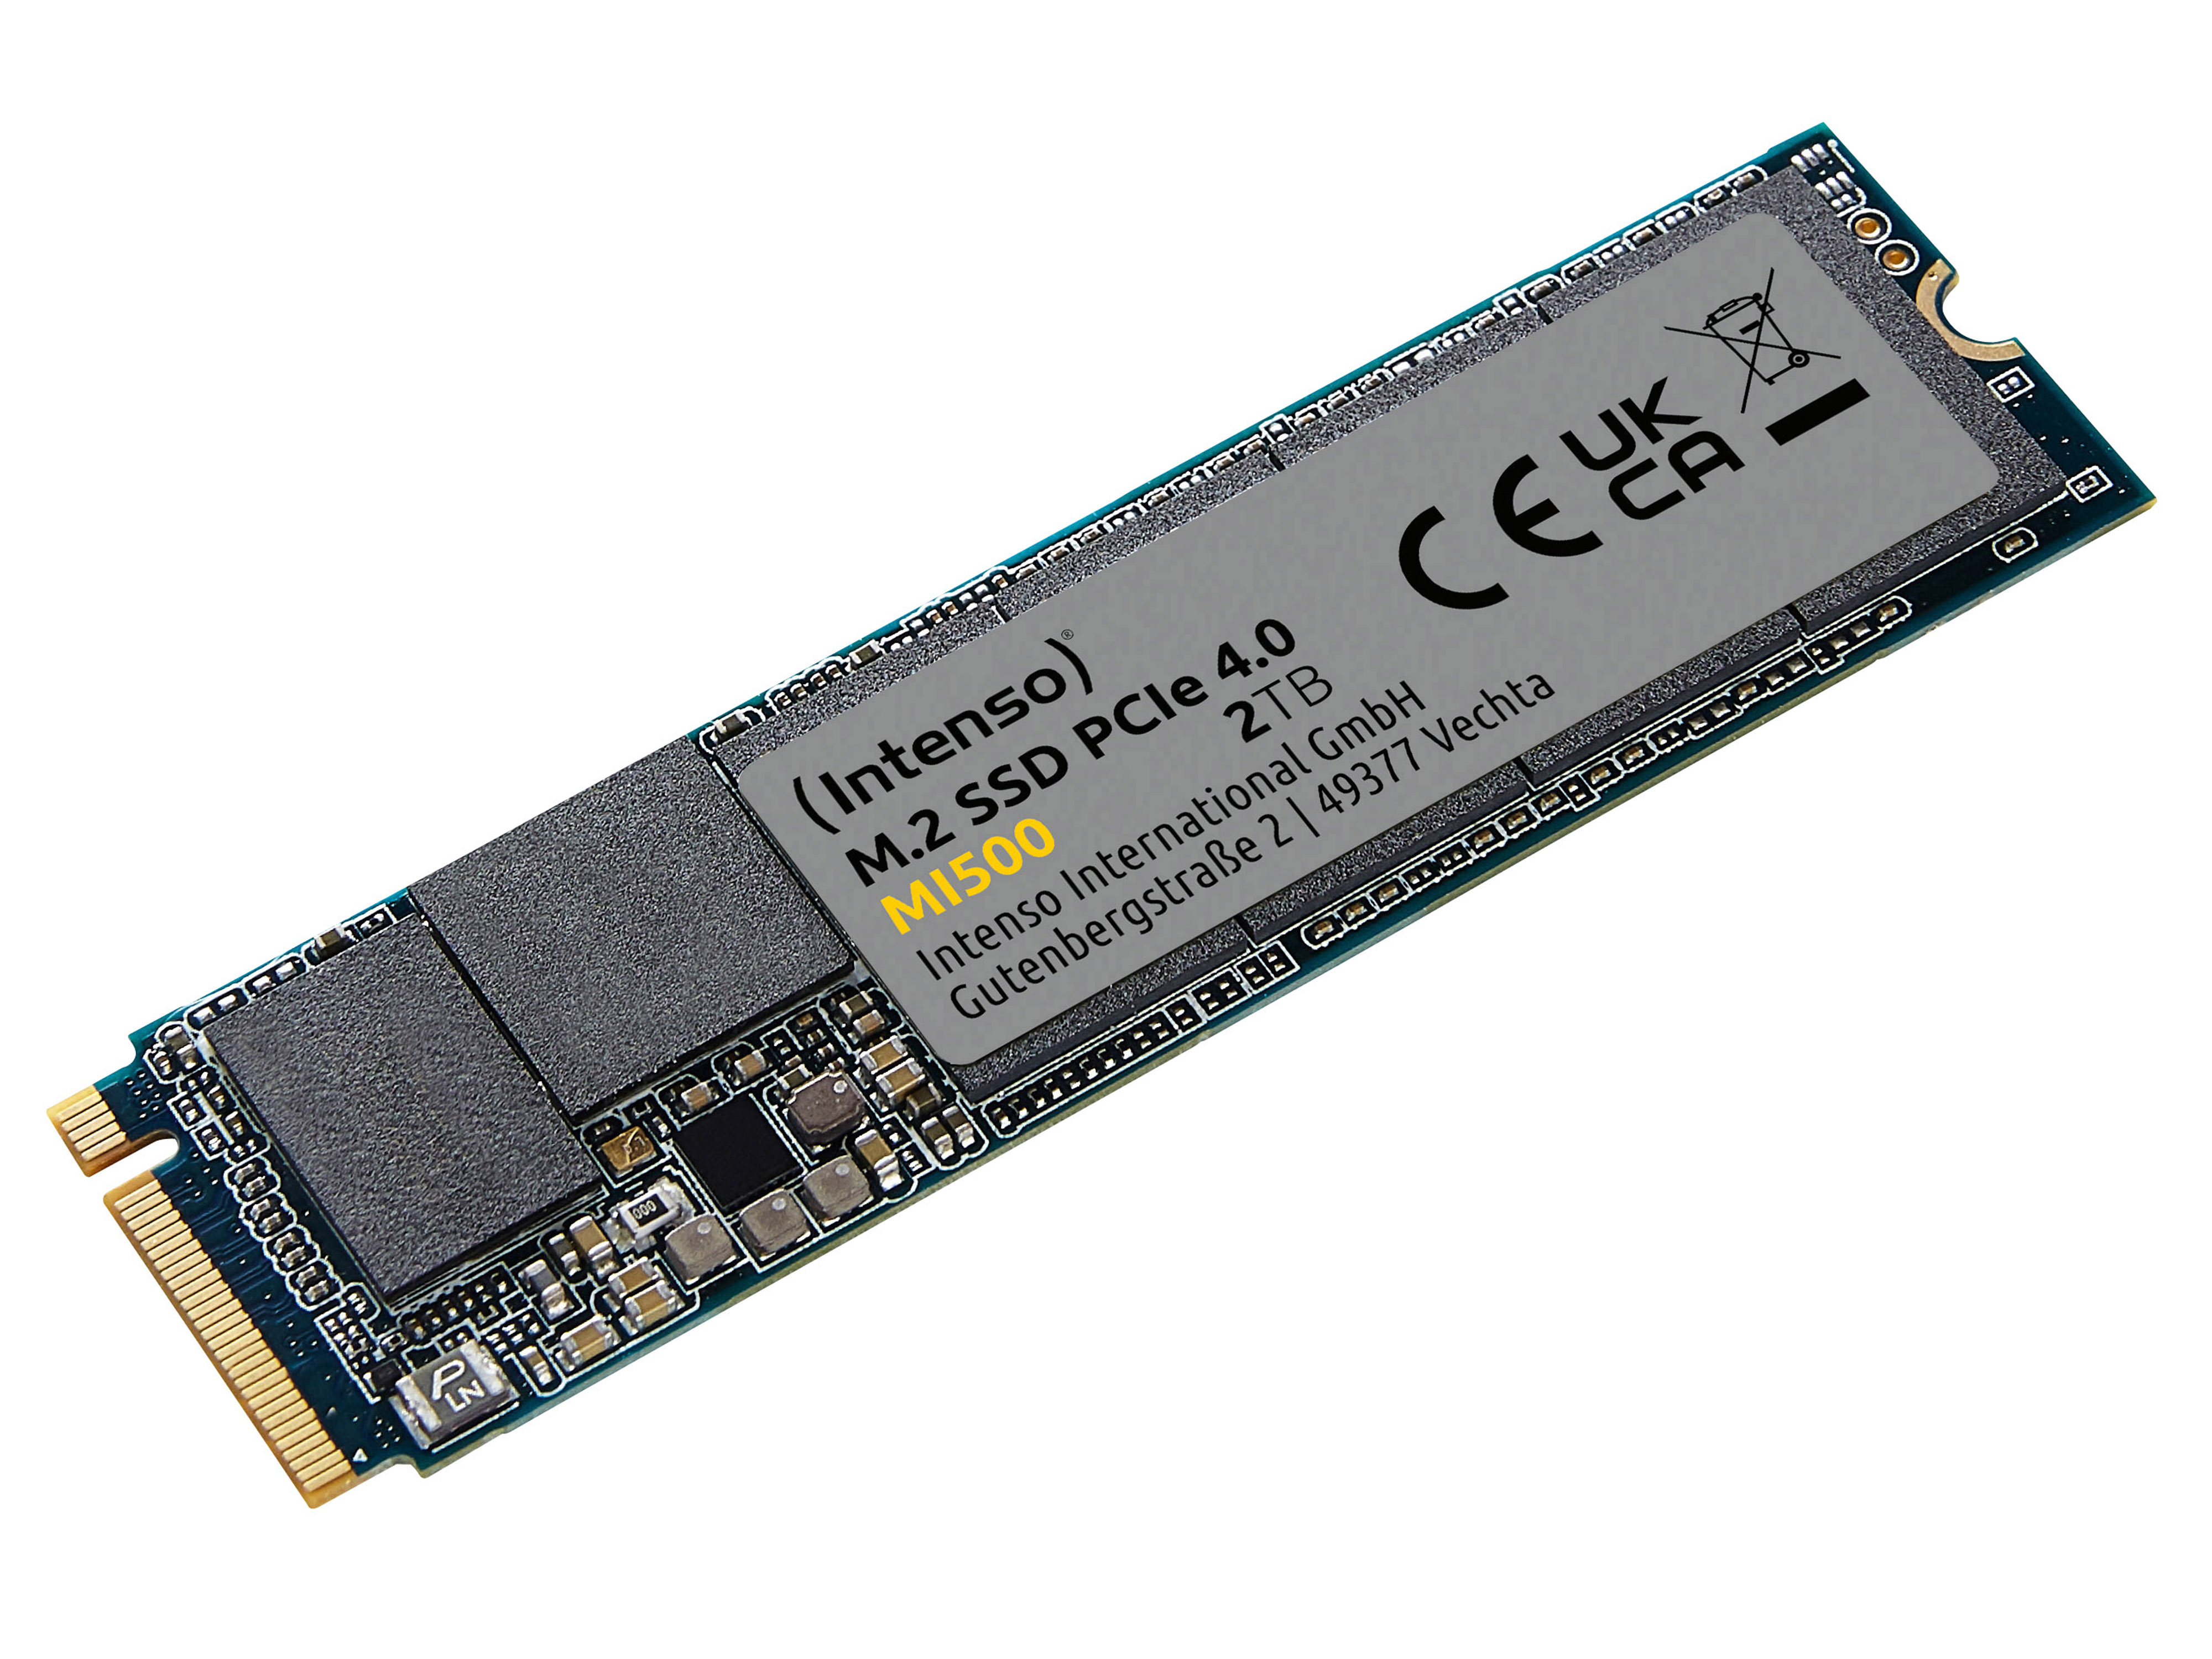 INTENSO M.2 SSD MI500 2TB